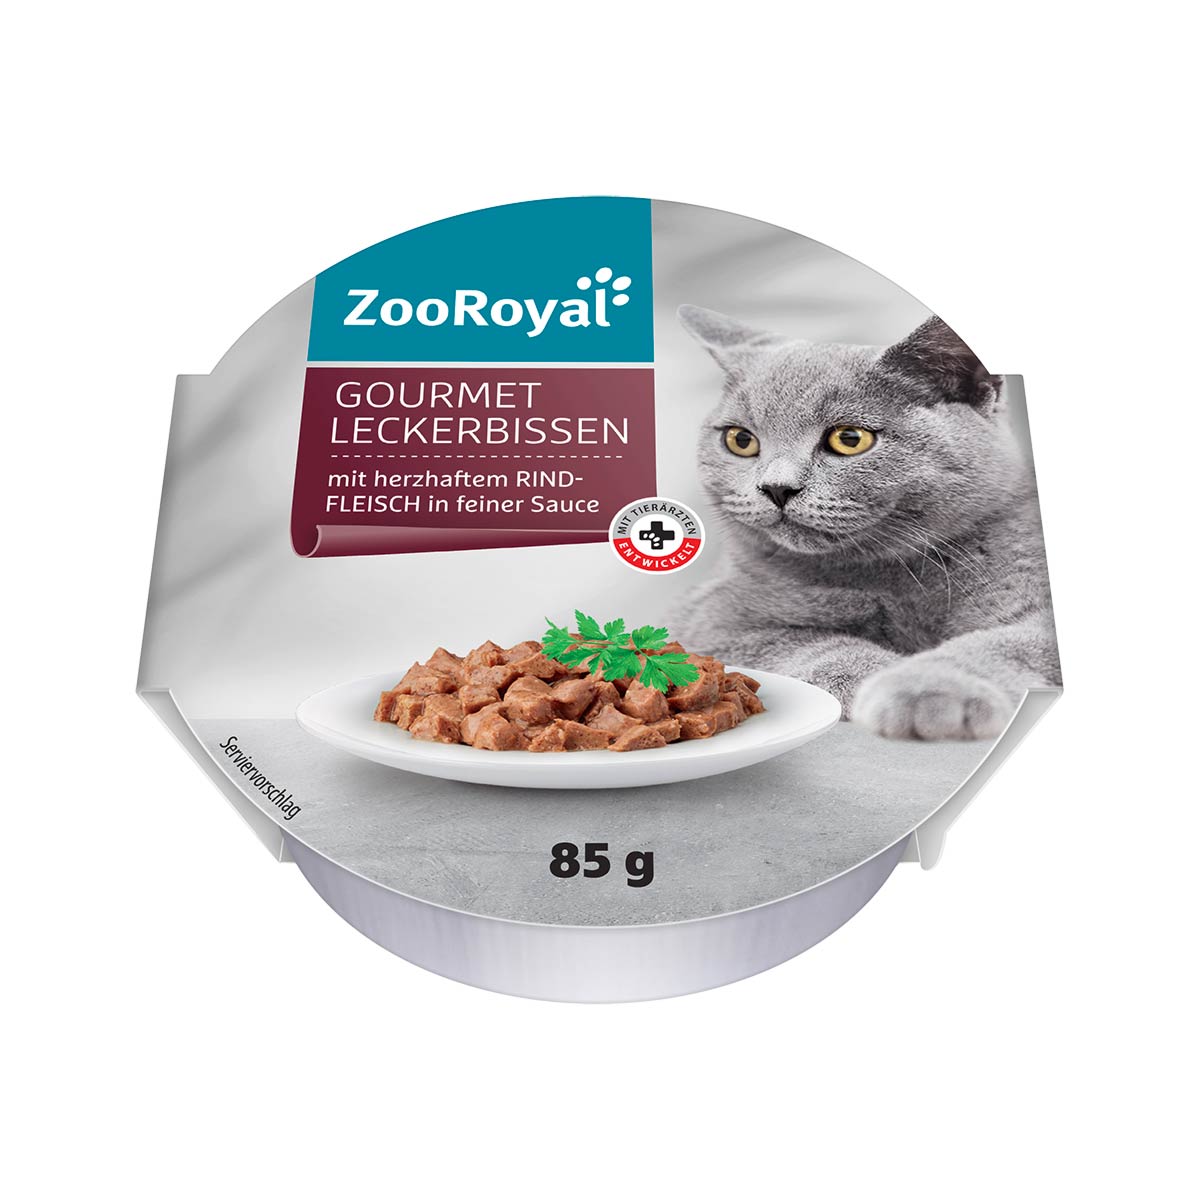 ZooRoyal Gourmet Leckerbissen mit herzhaftem Rindfleisch in feiner Sauce 12x85g